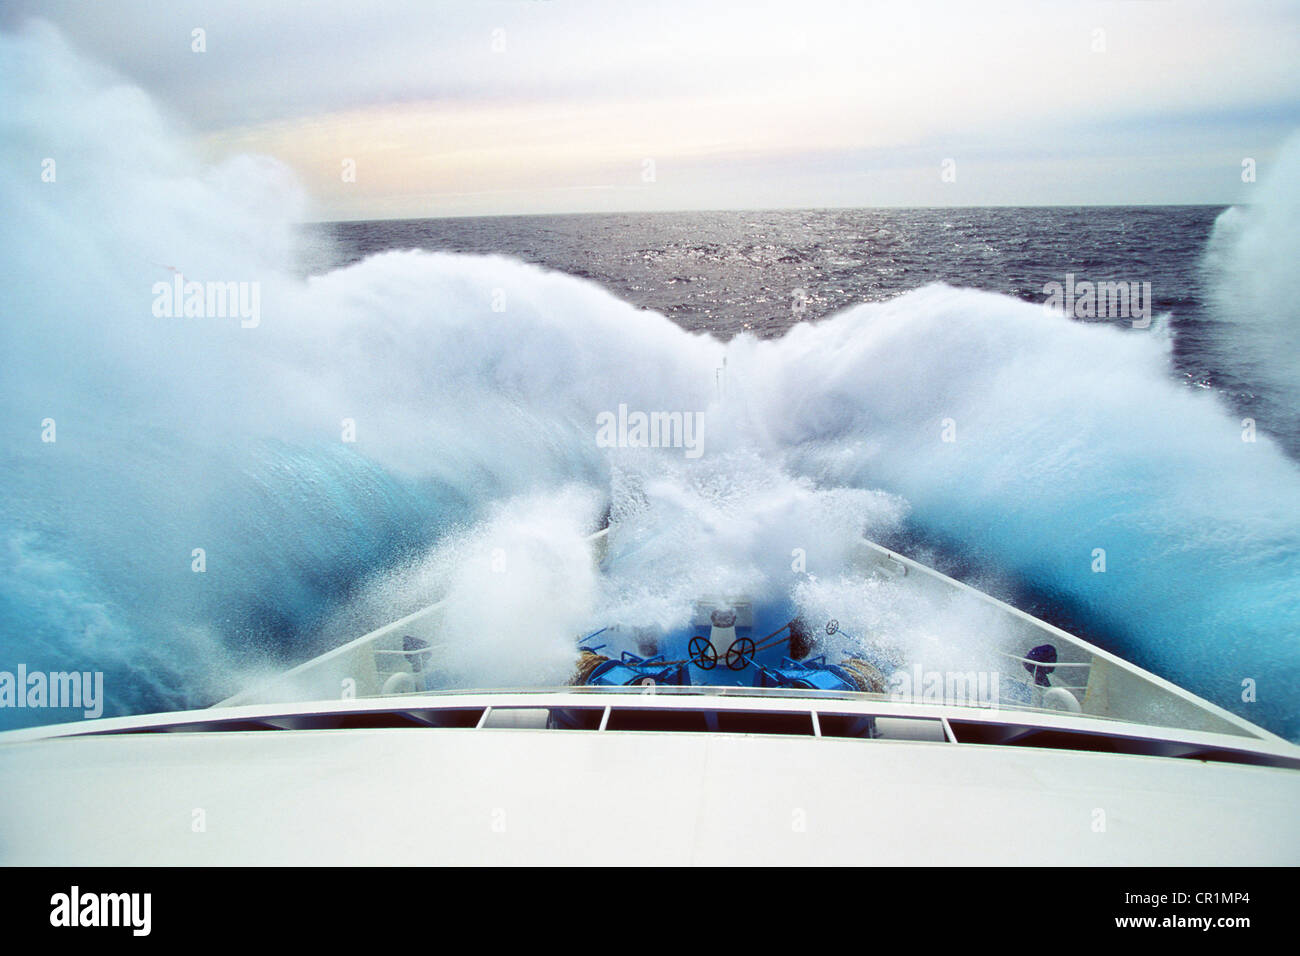 Wave hitting bow of a cruise ship, Drake Passage or Mar de Hoces, Southern Ocean, South Polar Ocean, Antarctica Stock Photo